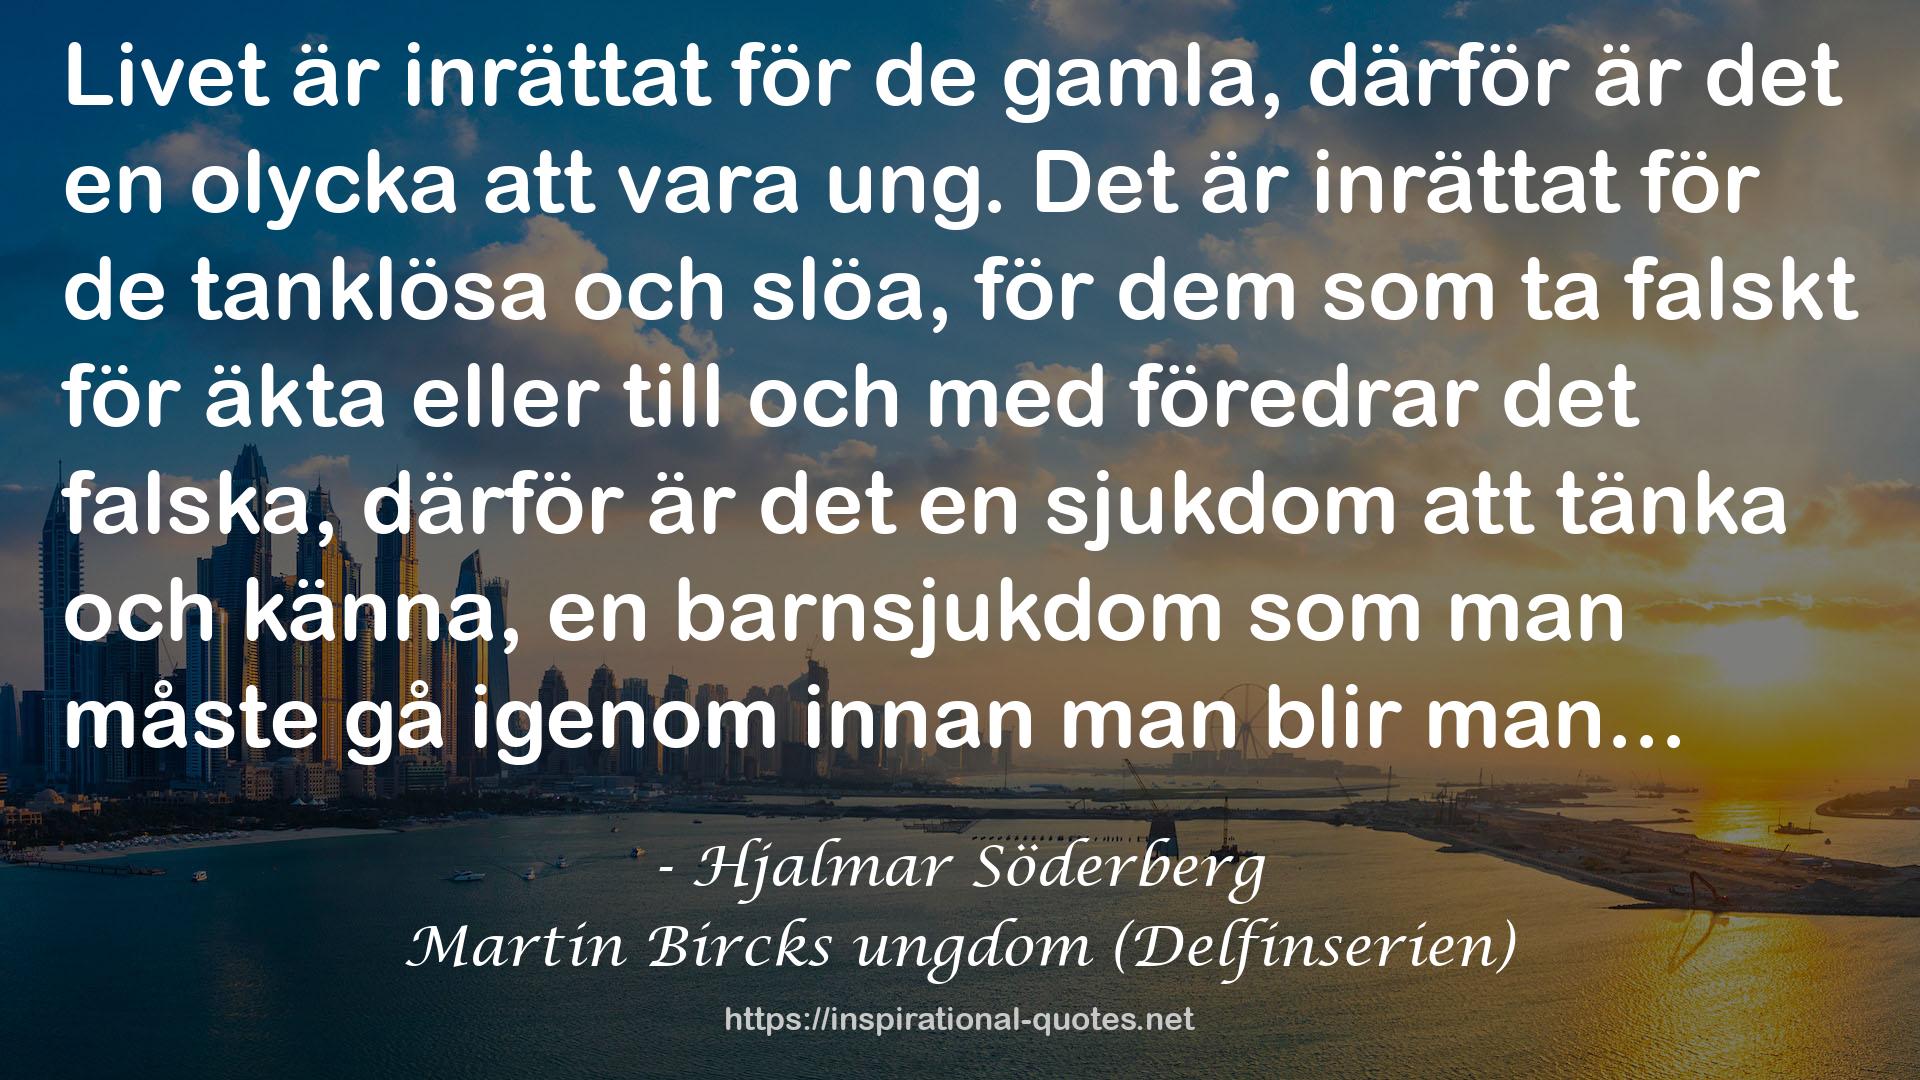 Martin Bircks ungdom (Delfinserien) QUOTES